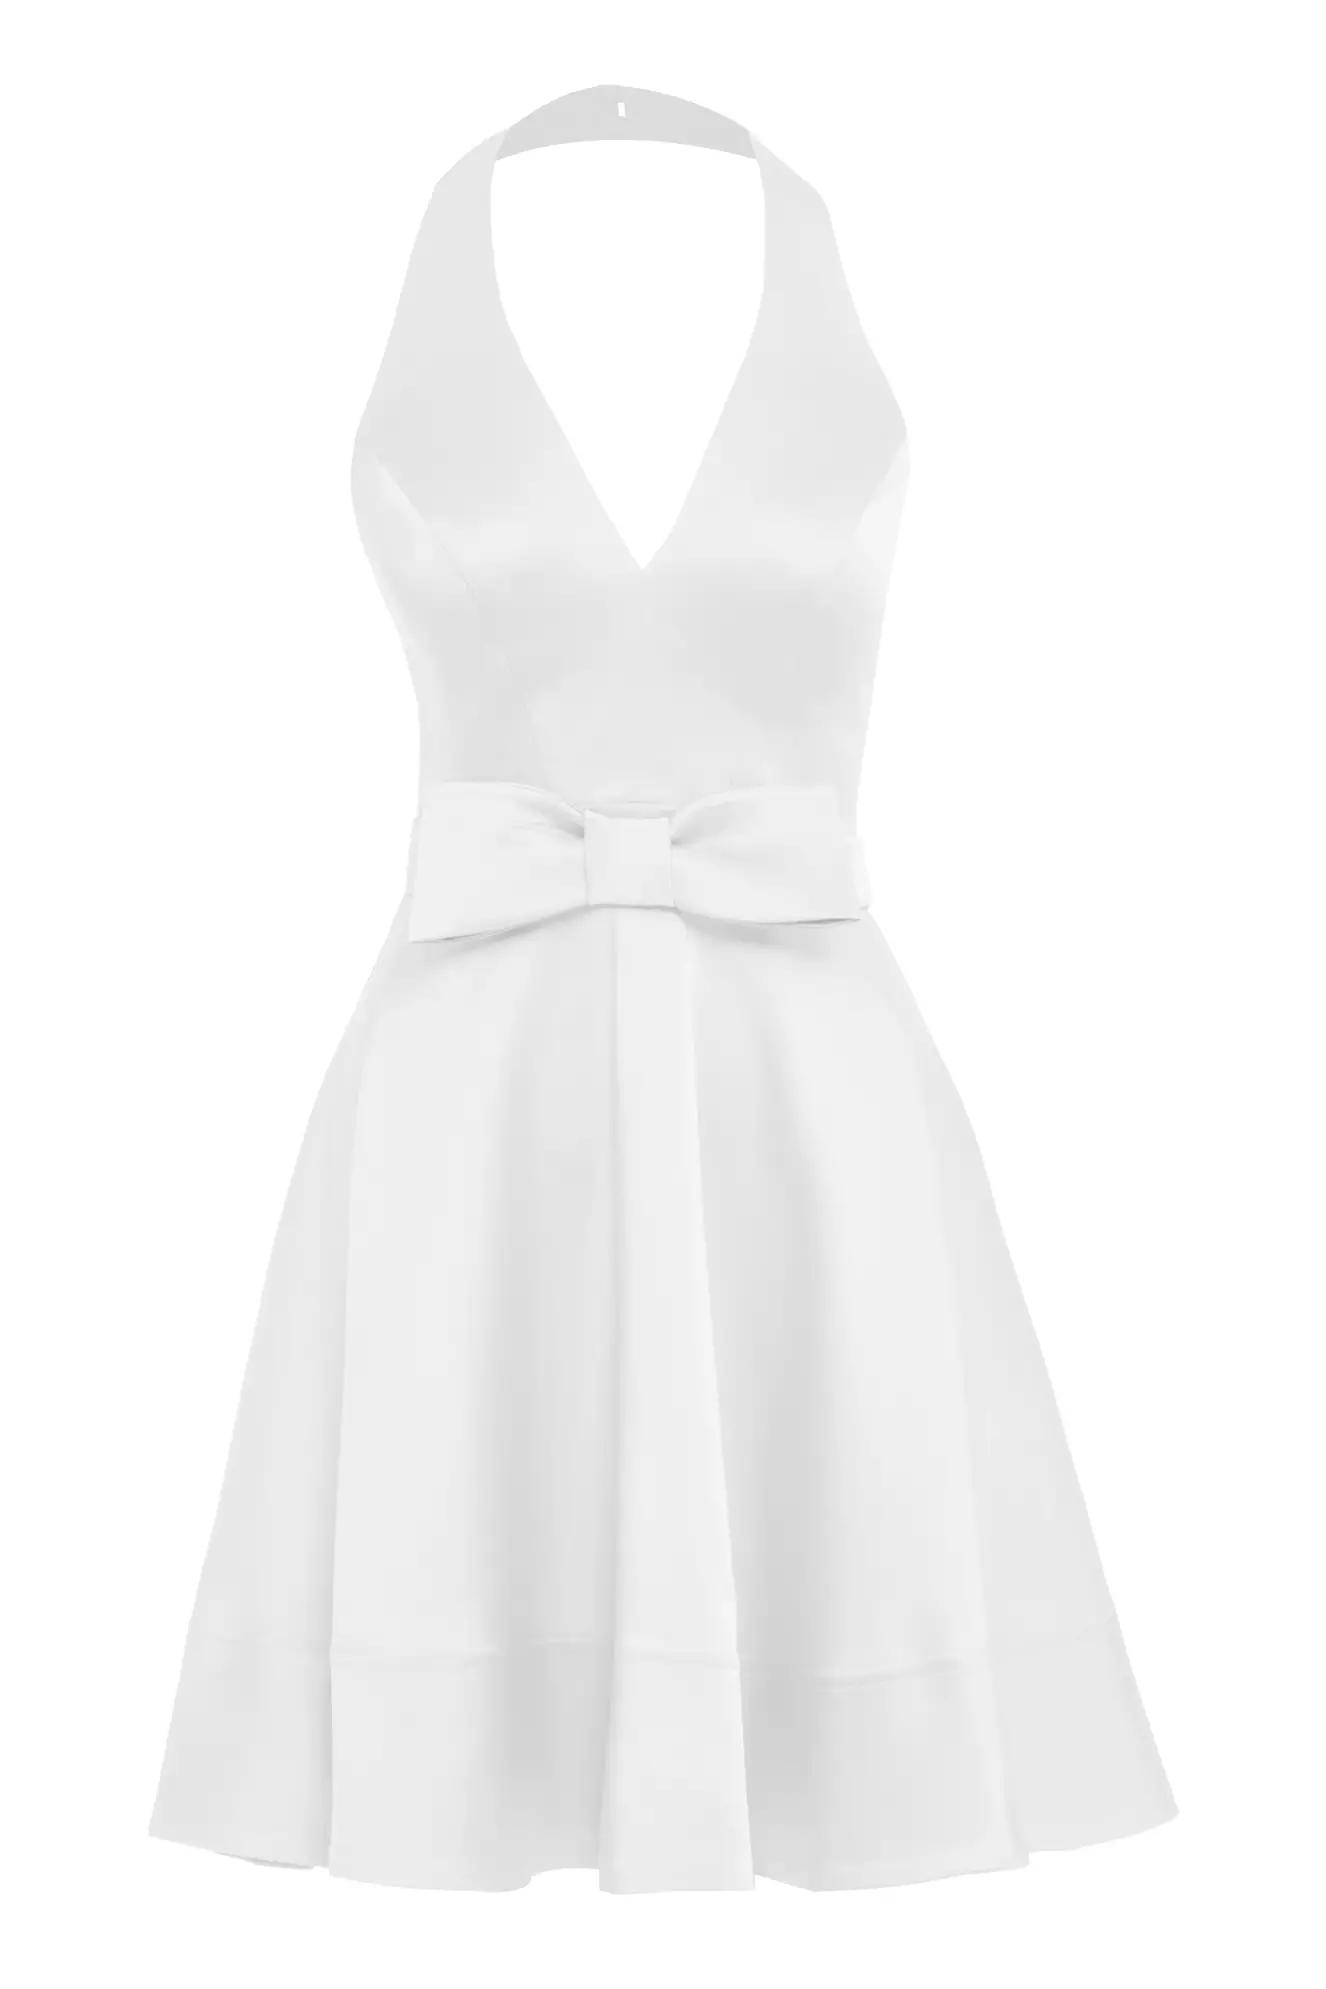 White satin sleeveless mini dress